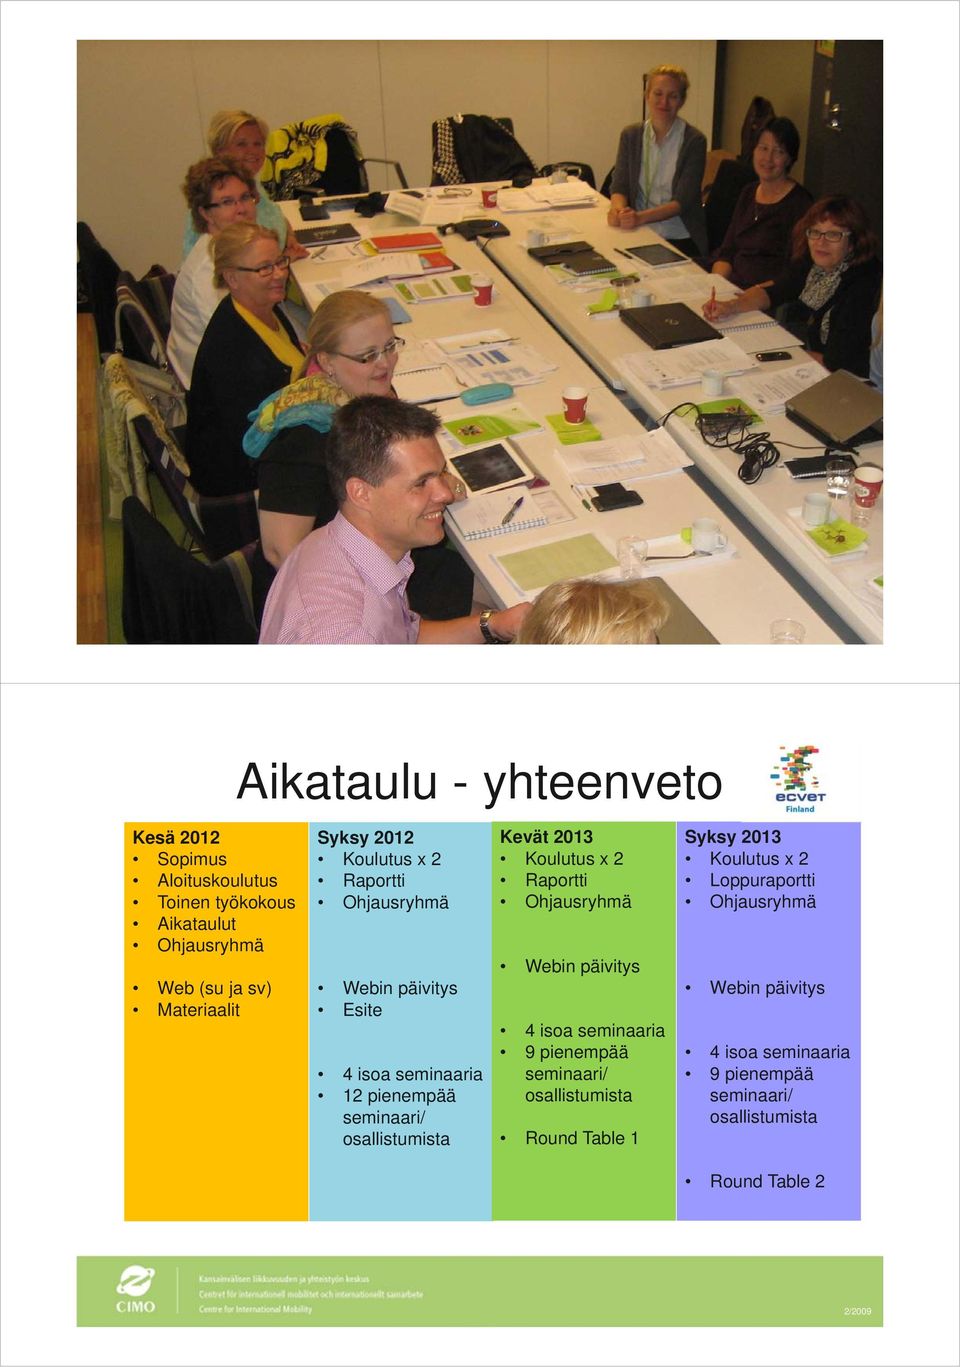 Kevät 2013 Koulutus x 2 Raportti Webin päivitys 4 isoa seminaaria 9 pienempää seminaari/ osallistumista Round Table